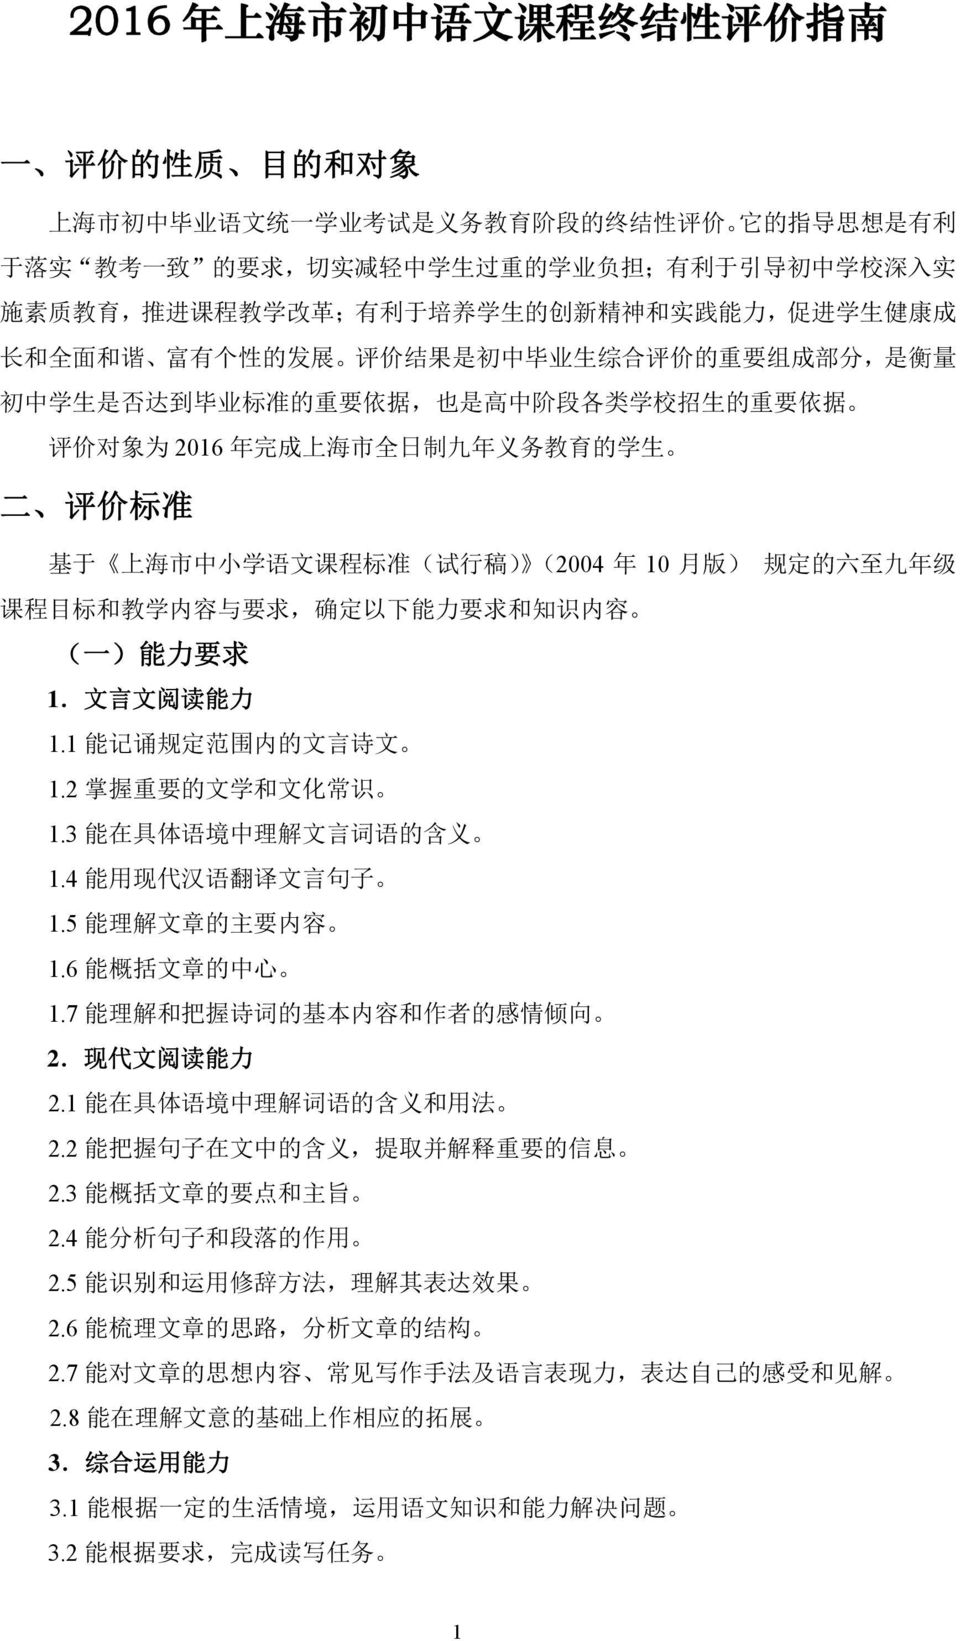 是 高 中 阶 段 各 类 学 校 招 生 的 重 要 依 据 评 价 对 象 为 2016 年 完 成 上 海 市 全 日 制 九 年 义 务 教 育 的 学 生 二 评 价 标 准 基 于 上 海 市 中 小 学 语 文 课 程 标 准 ( 试 行 稿 ) (2004 年 10 月 版 ) 规 定 的 六 至 九 年 级 课 程 目 标 和 教 学 内 容 与 要 求, 确 定 以 下 能